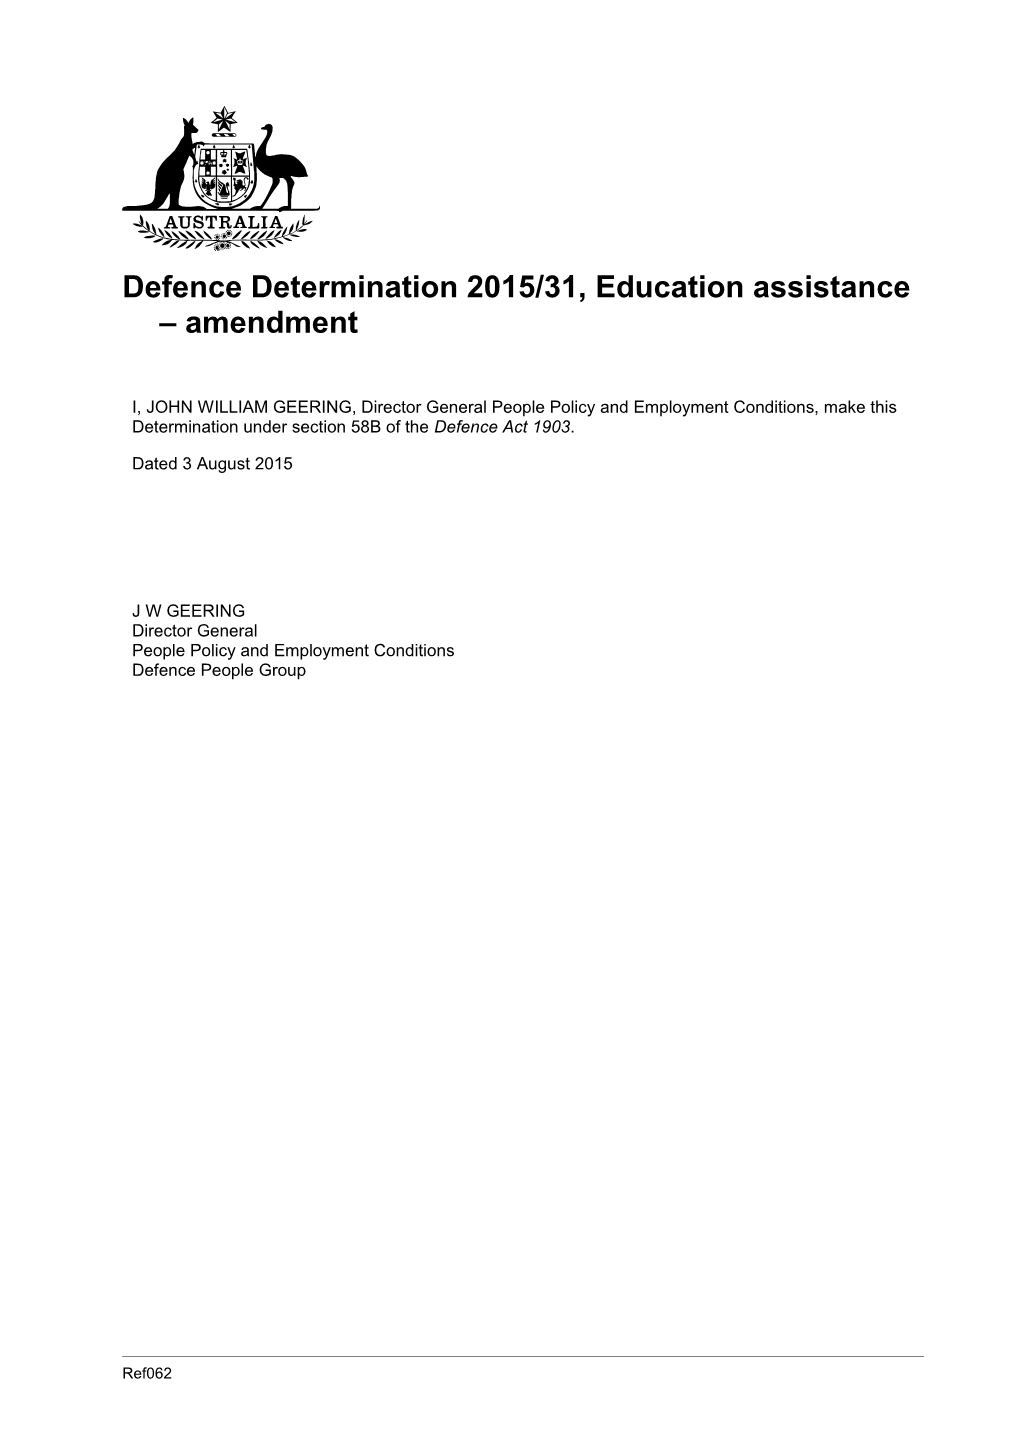 Defence Determination 2015/31, Education Assistance Amendment